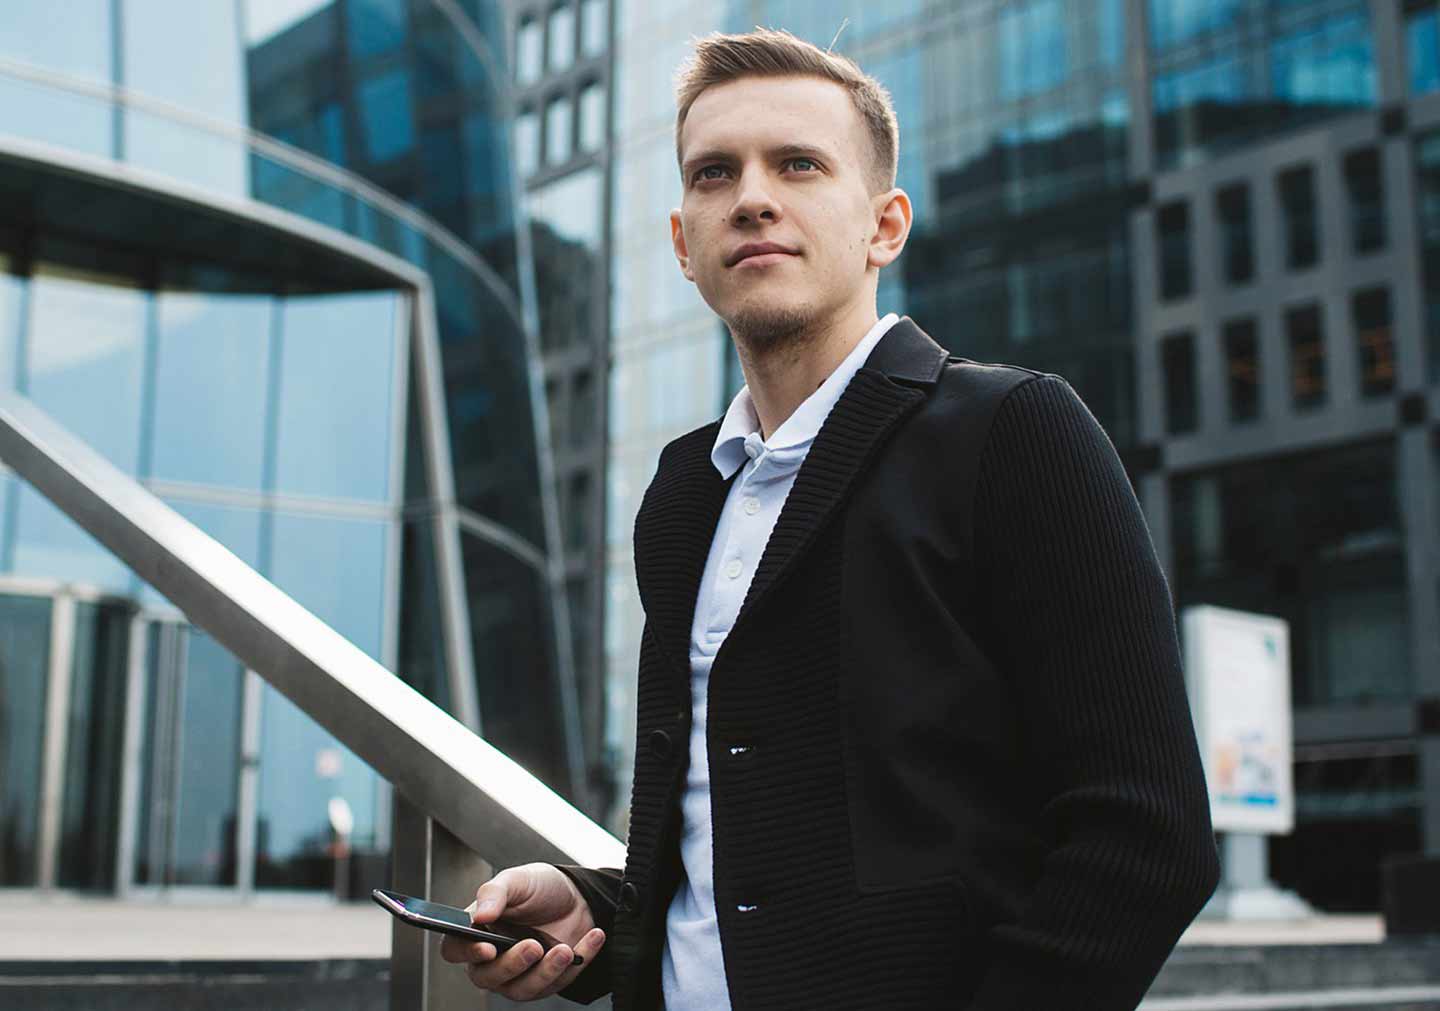 История успеха: Станислав Жупин, инвестор, предприниматель, учредитель бизнес-сообщества Like в Омске